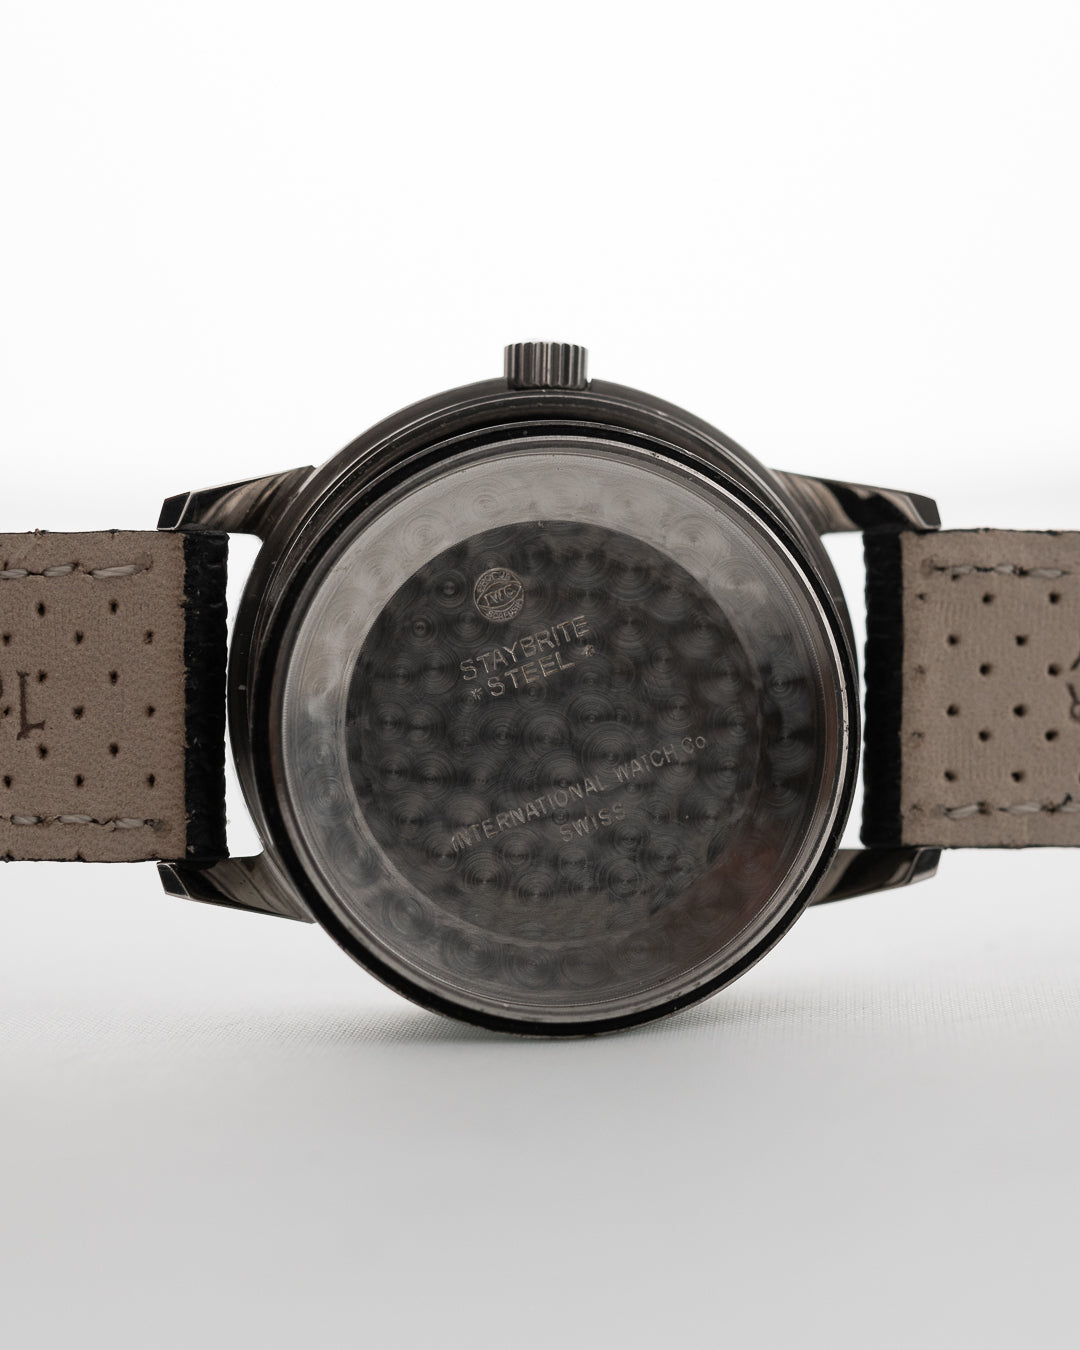 Iwc Ingenieur 666ad black 1962 - Goldammer Vintage Watches